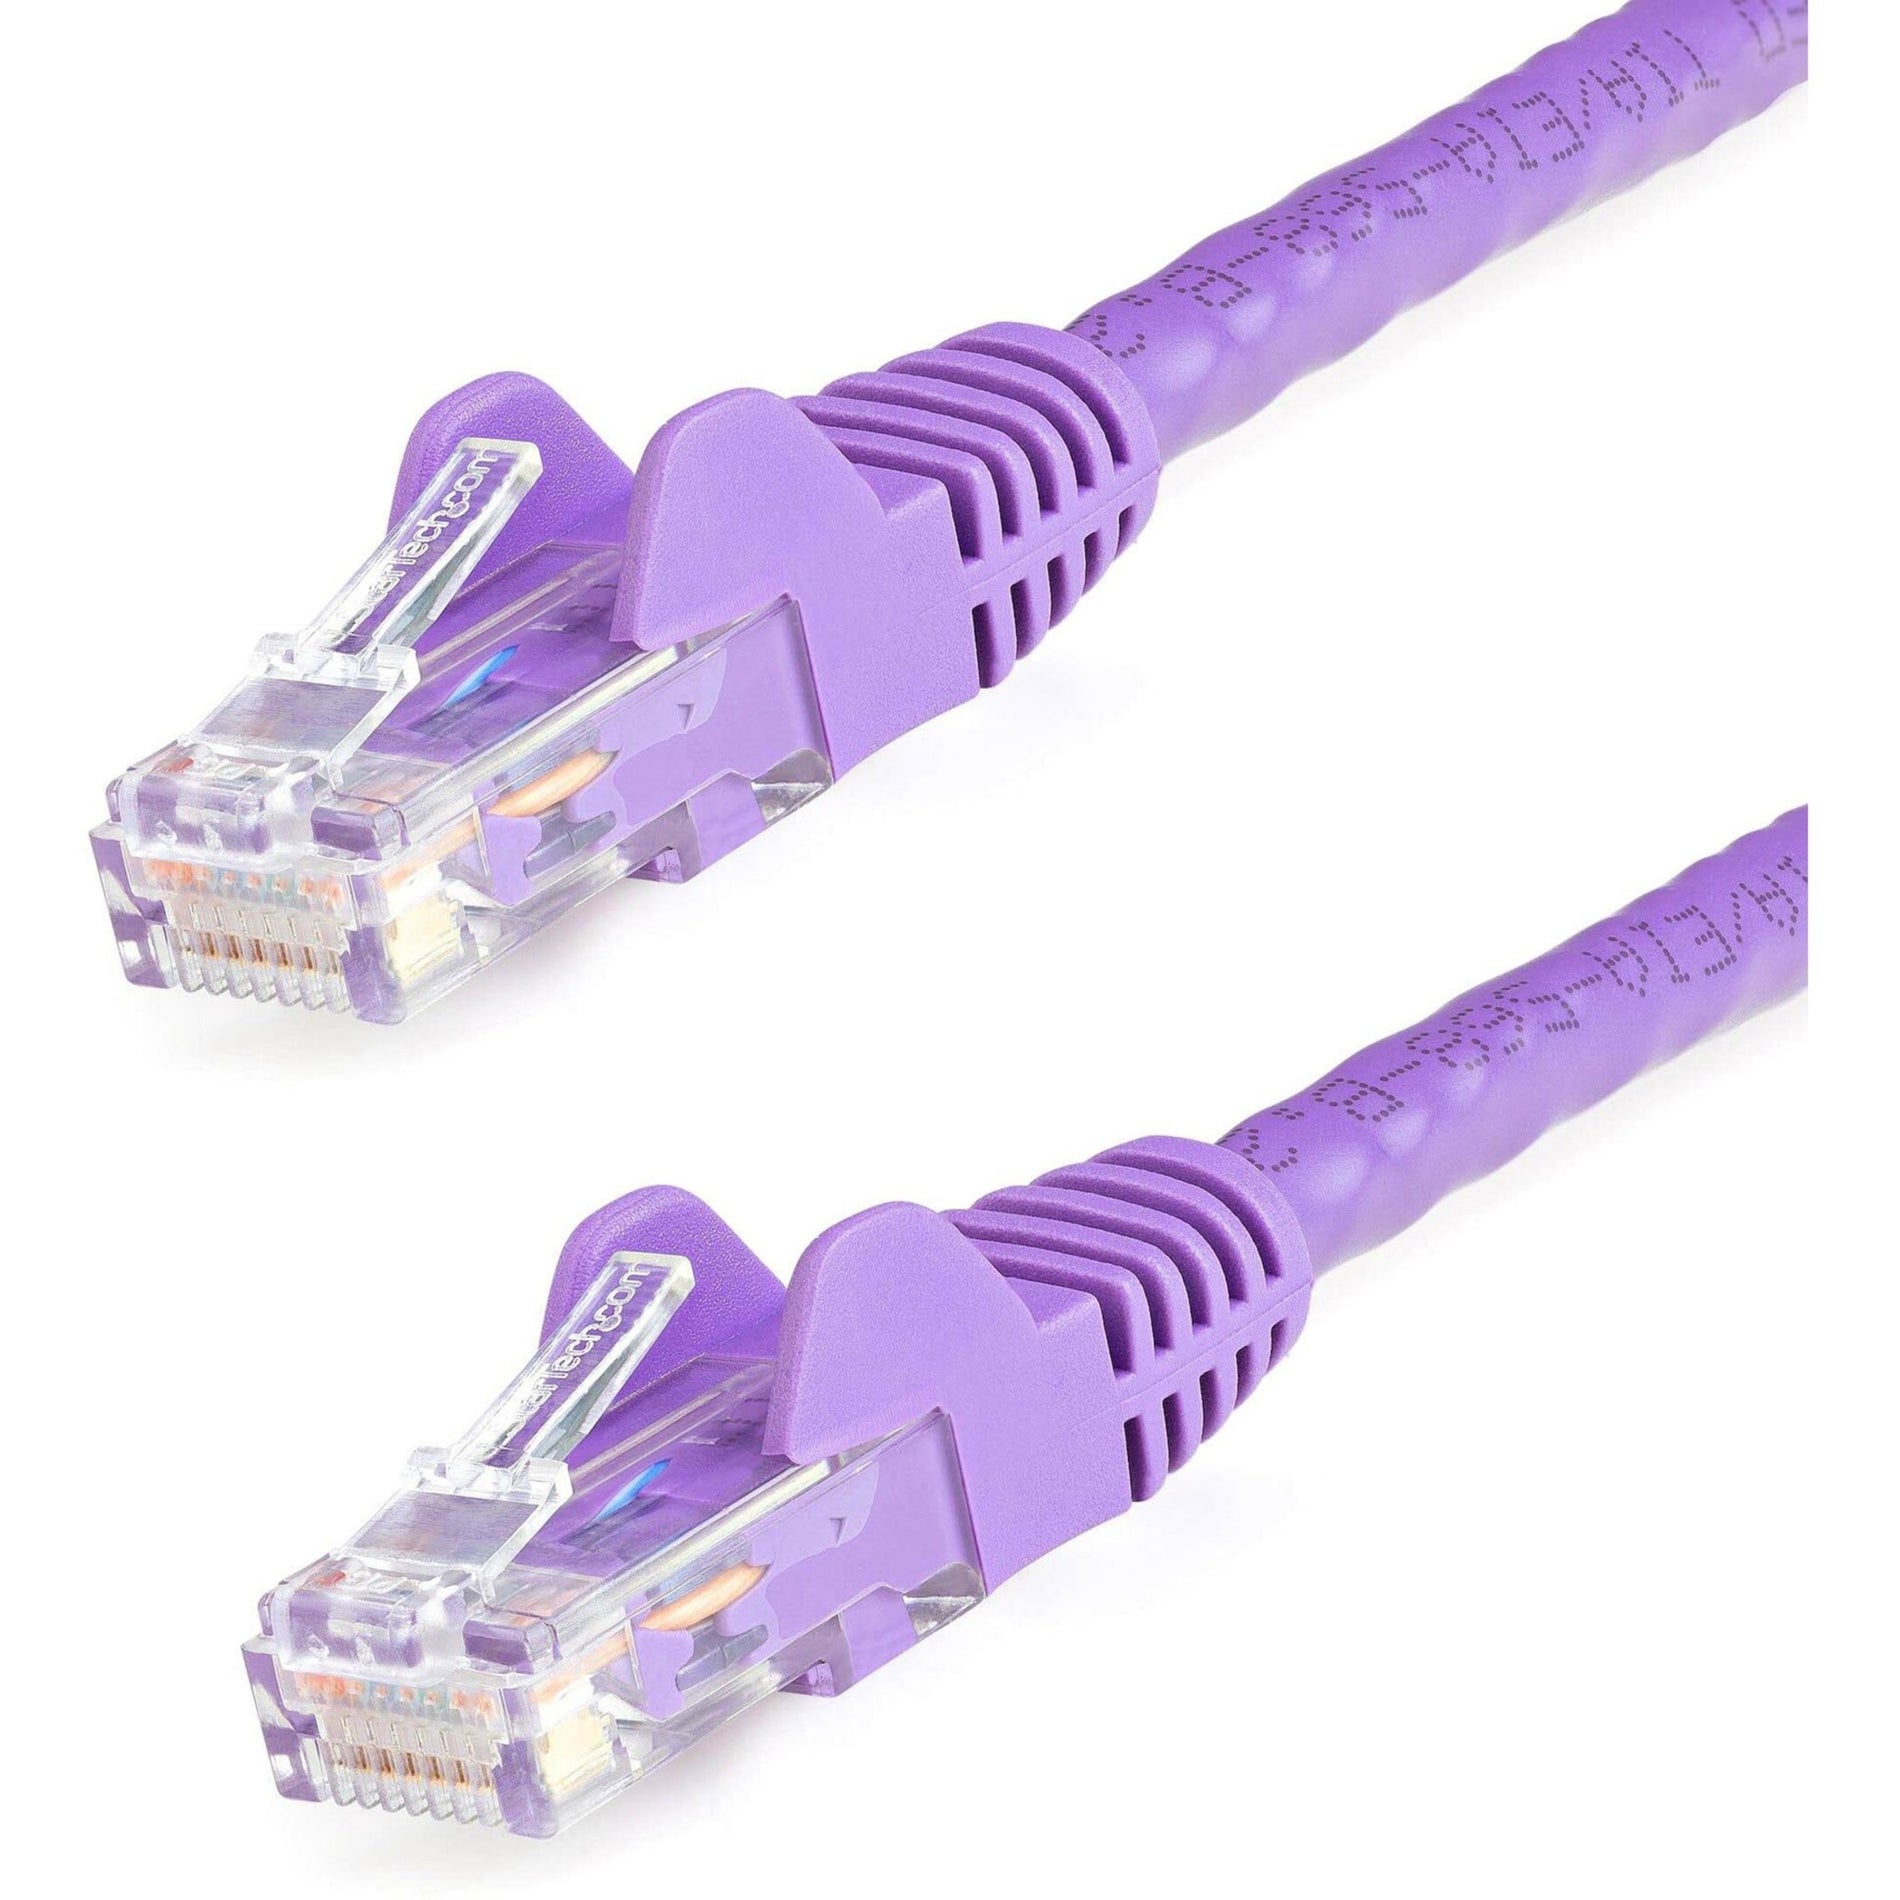 StarTech.com N6PATCH150PL Cat6 Patch Cable, 150ft Purple Ethernet Cable, Snagless RJ45 Connectors